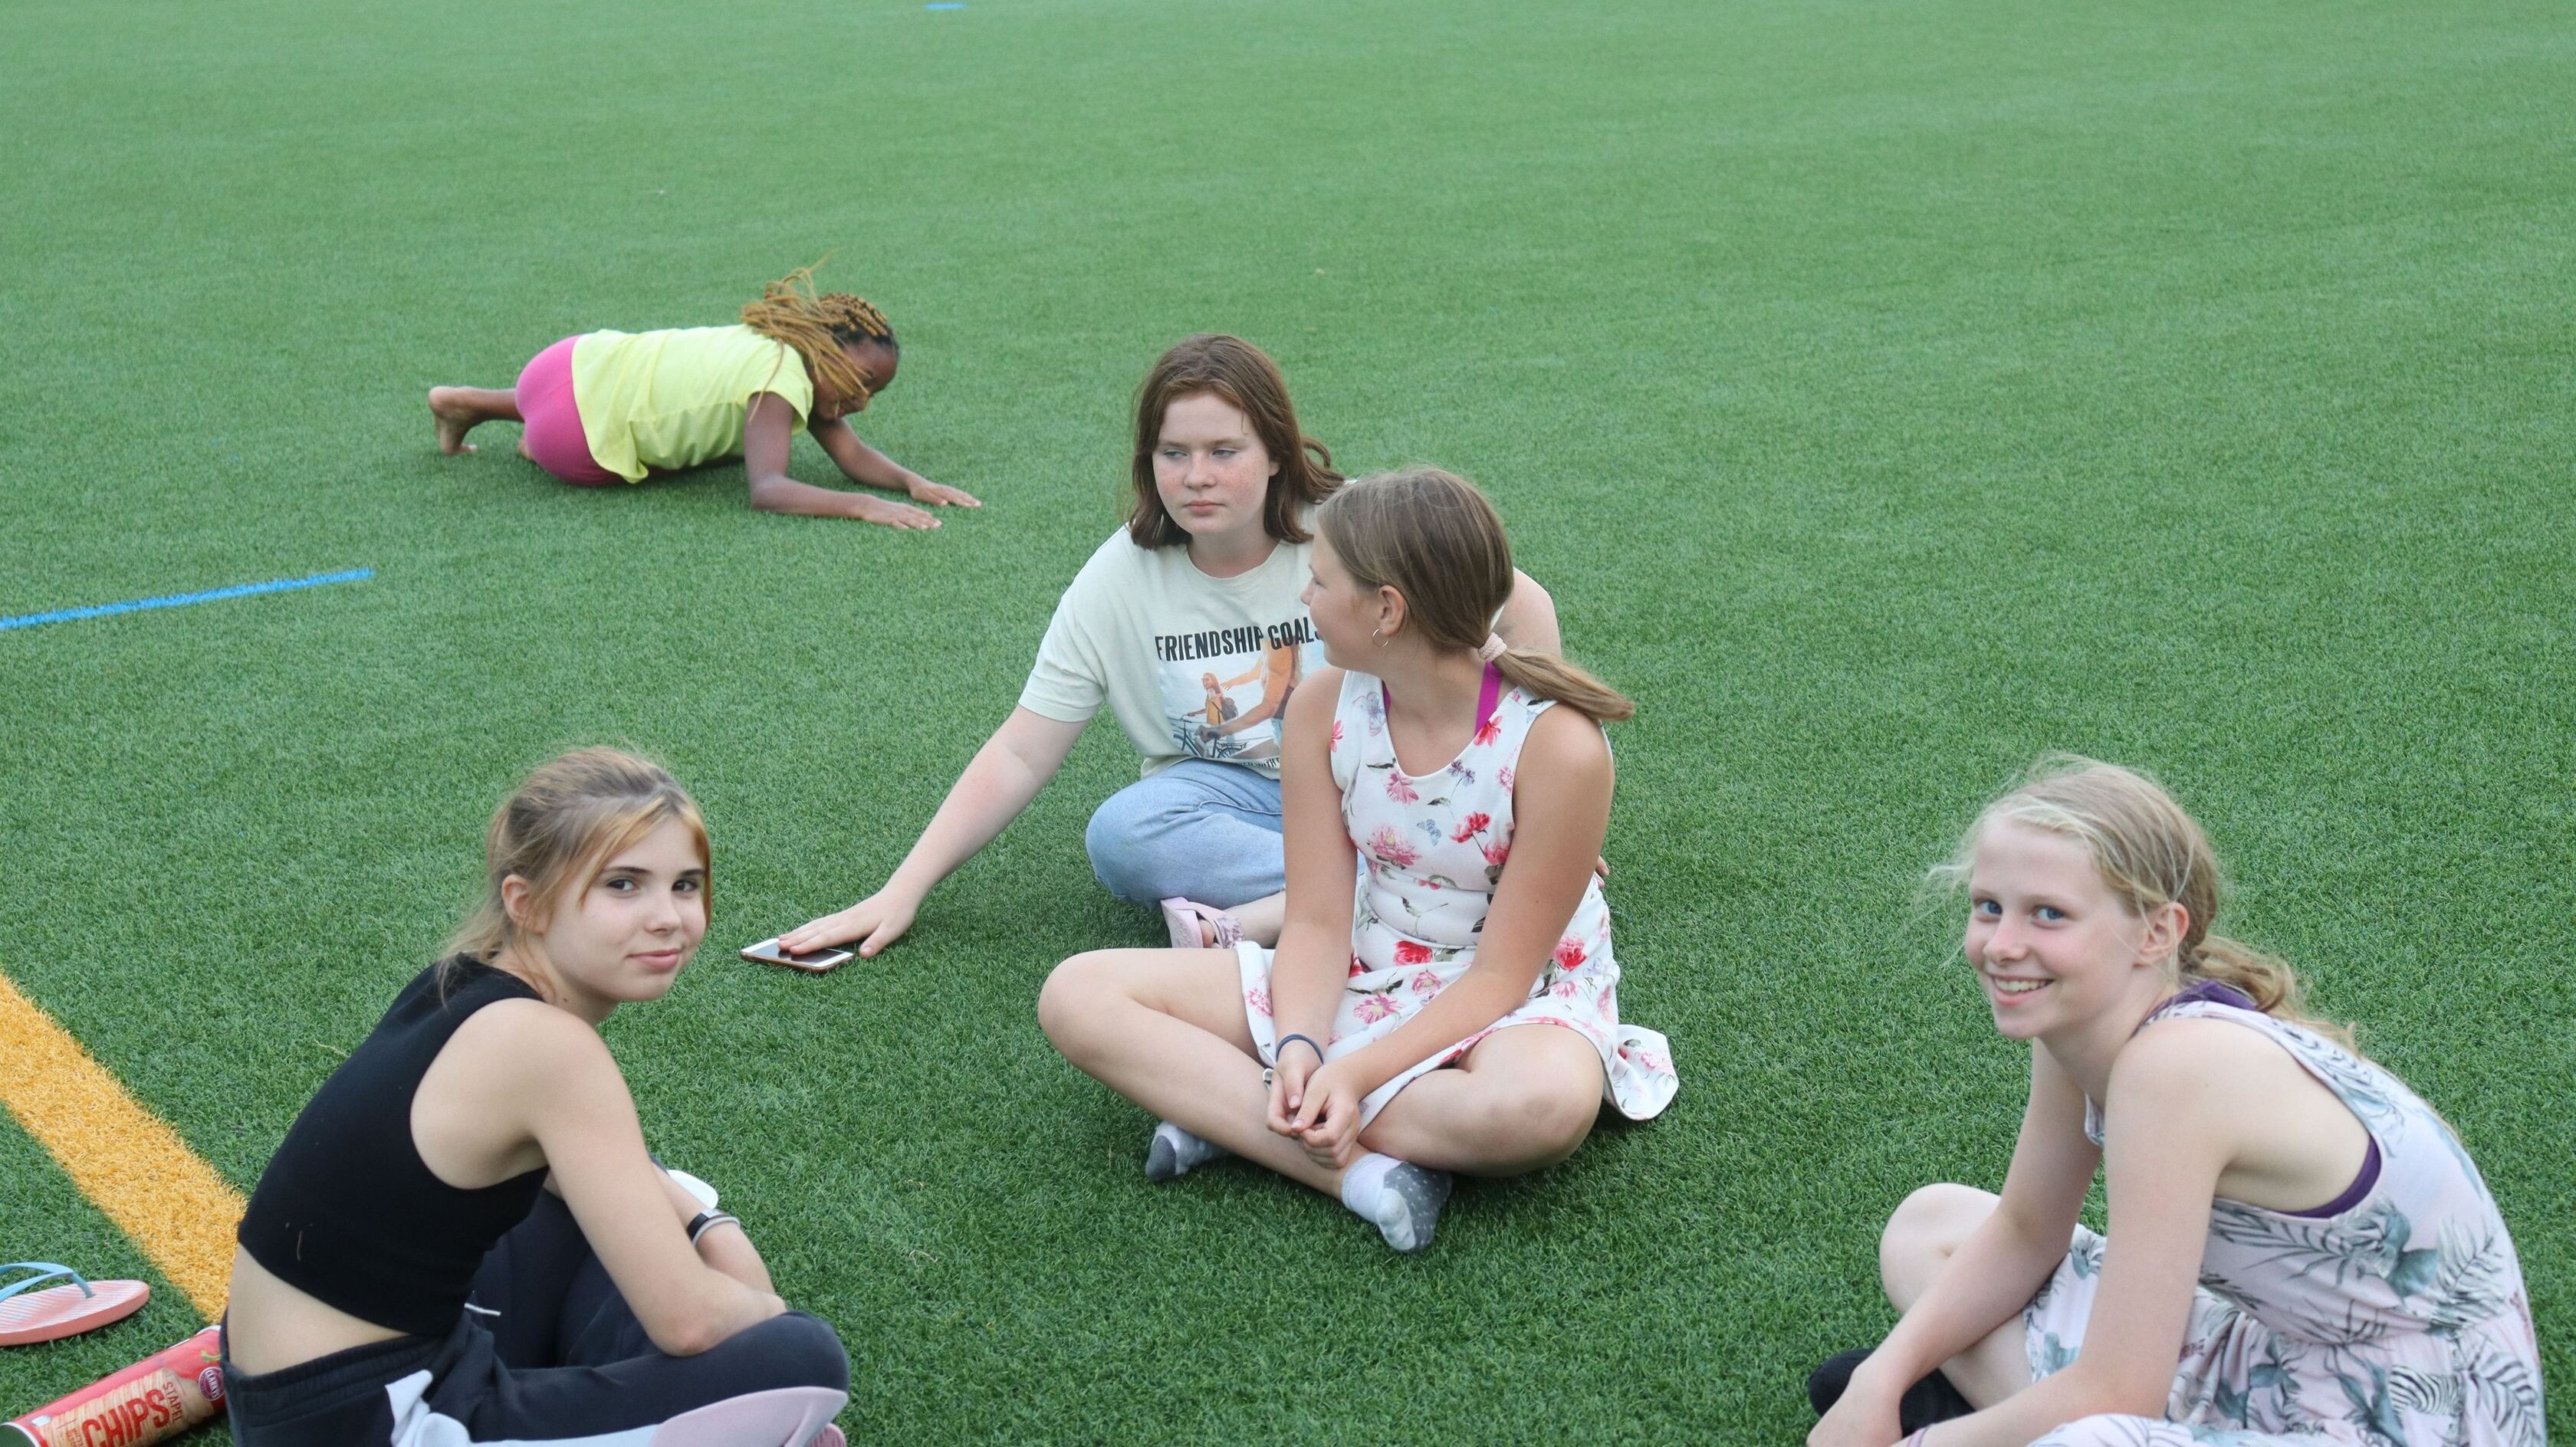 Mädchen sitzen auf einer Kunstrasenfläche